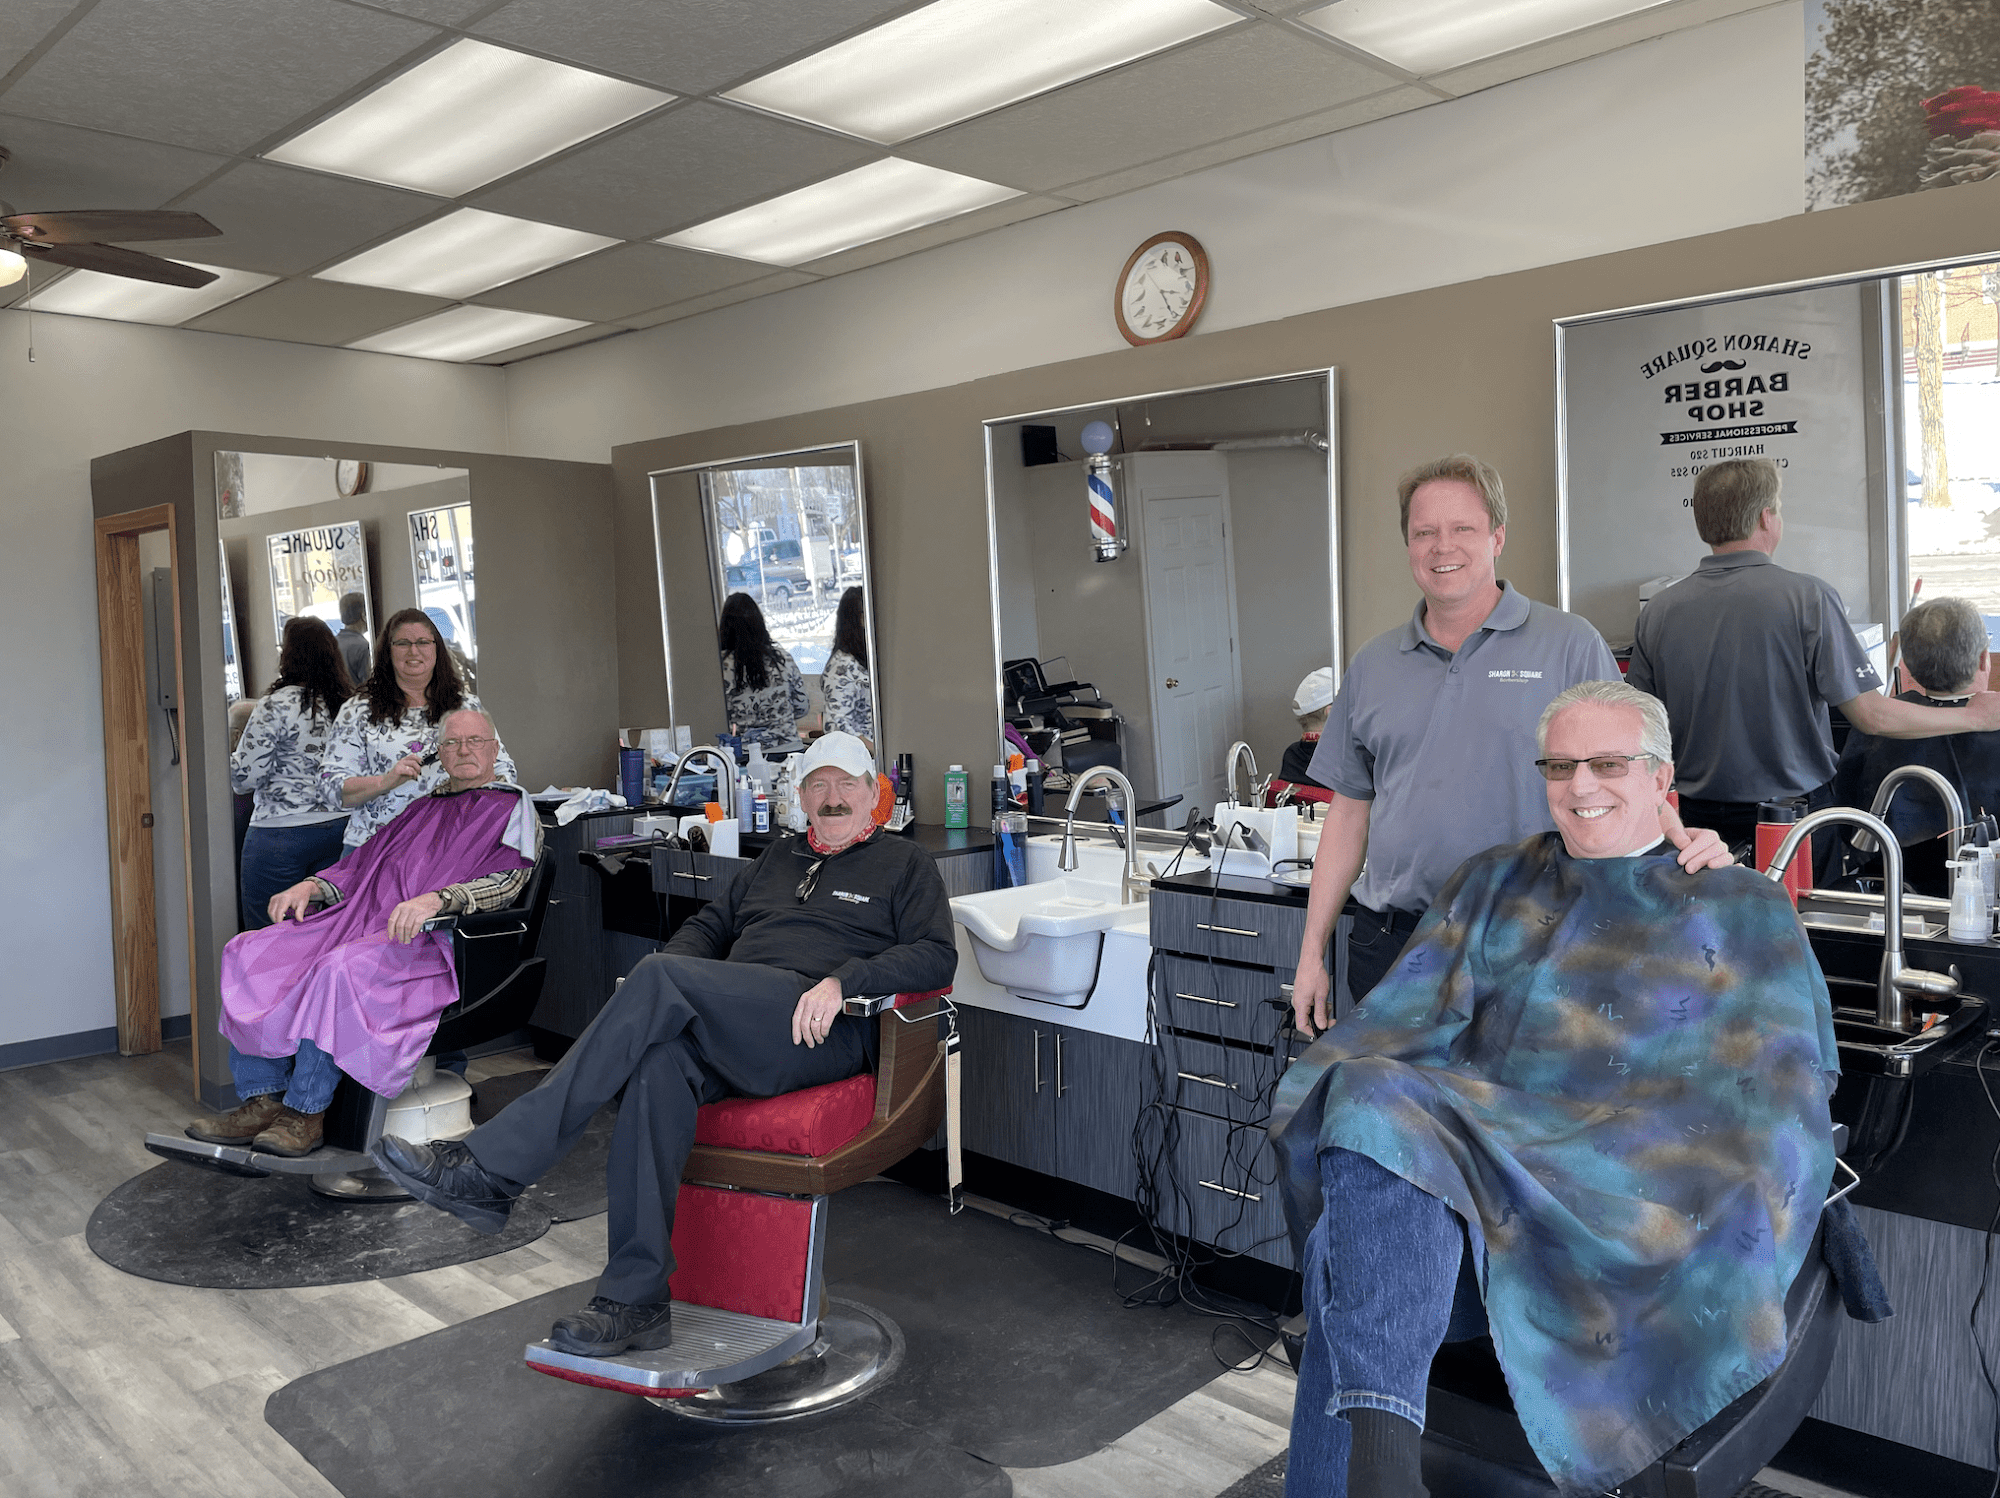 Sharon Square Barber Shop